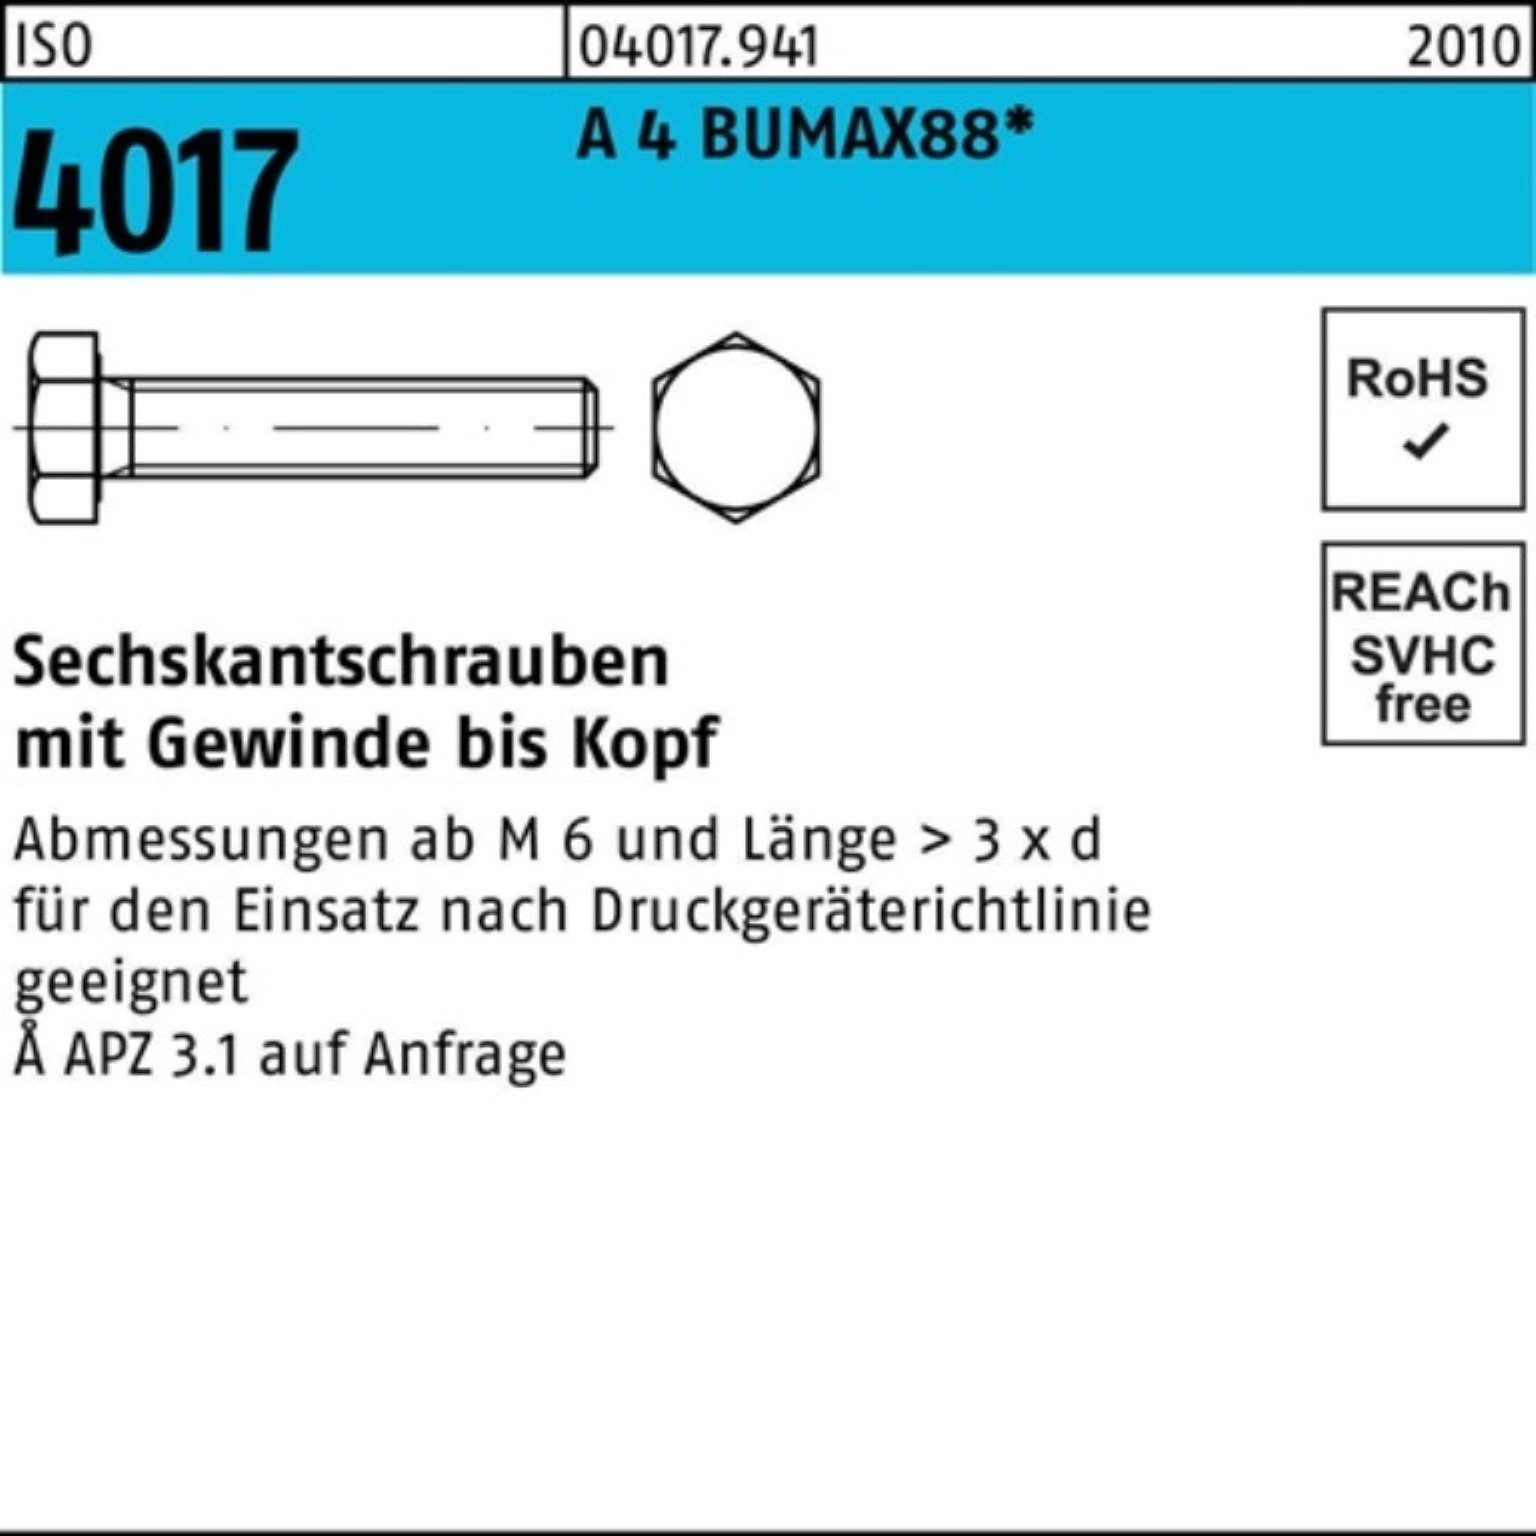 Bufab Sechskantschraube 100er Pack Sechskantschraube ISO 4017 VG M16x 40 A 4 BUMAX88 25 Stück